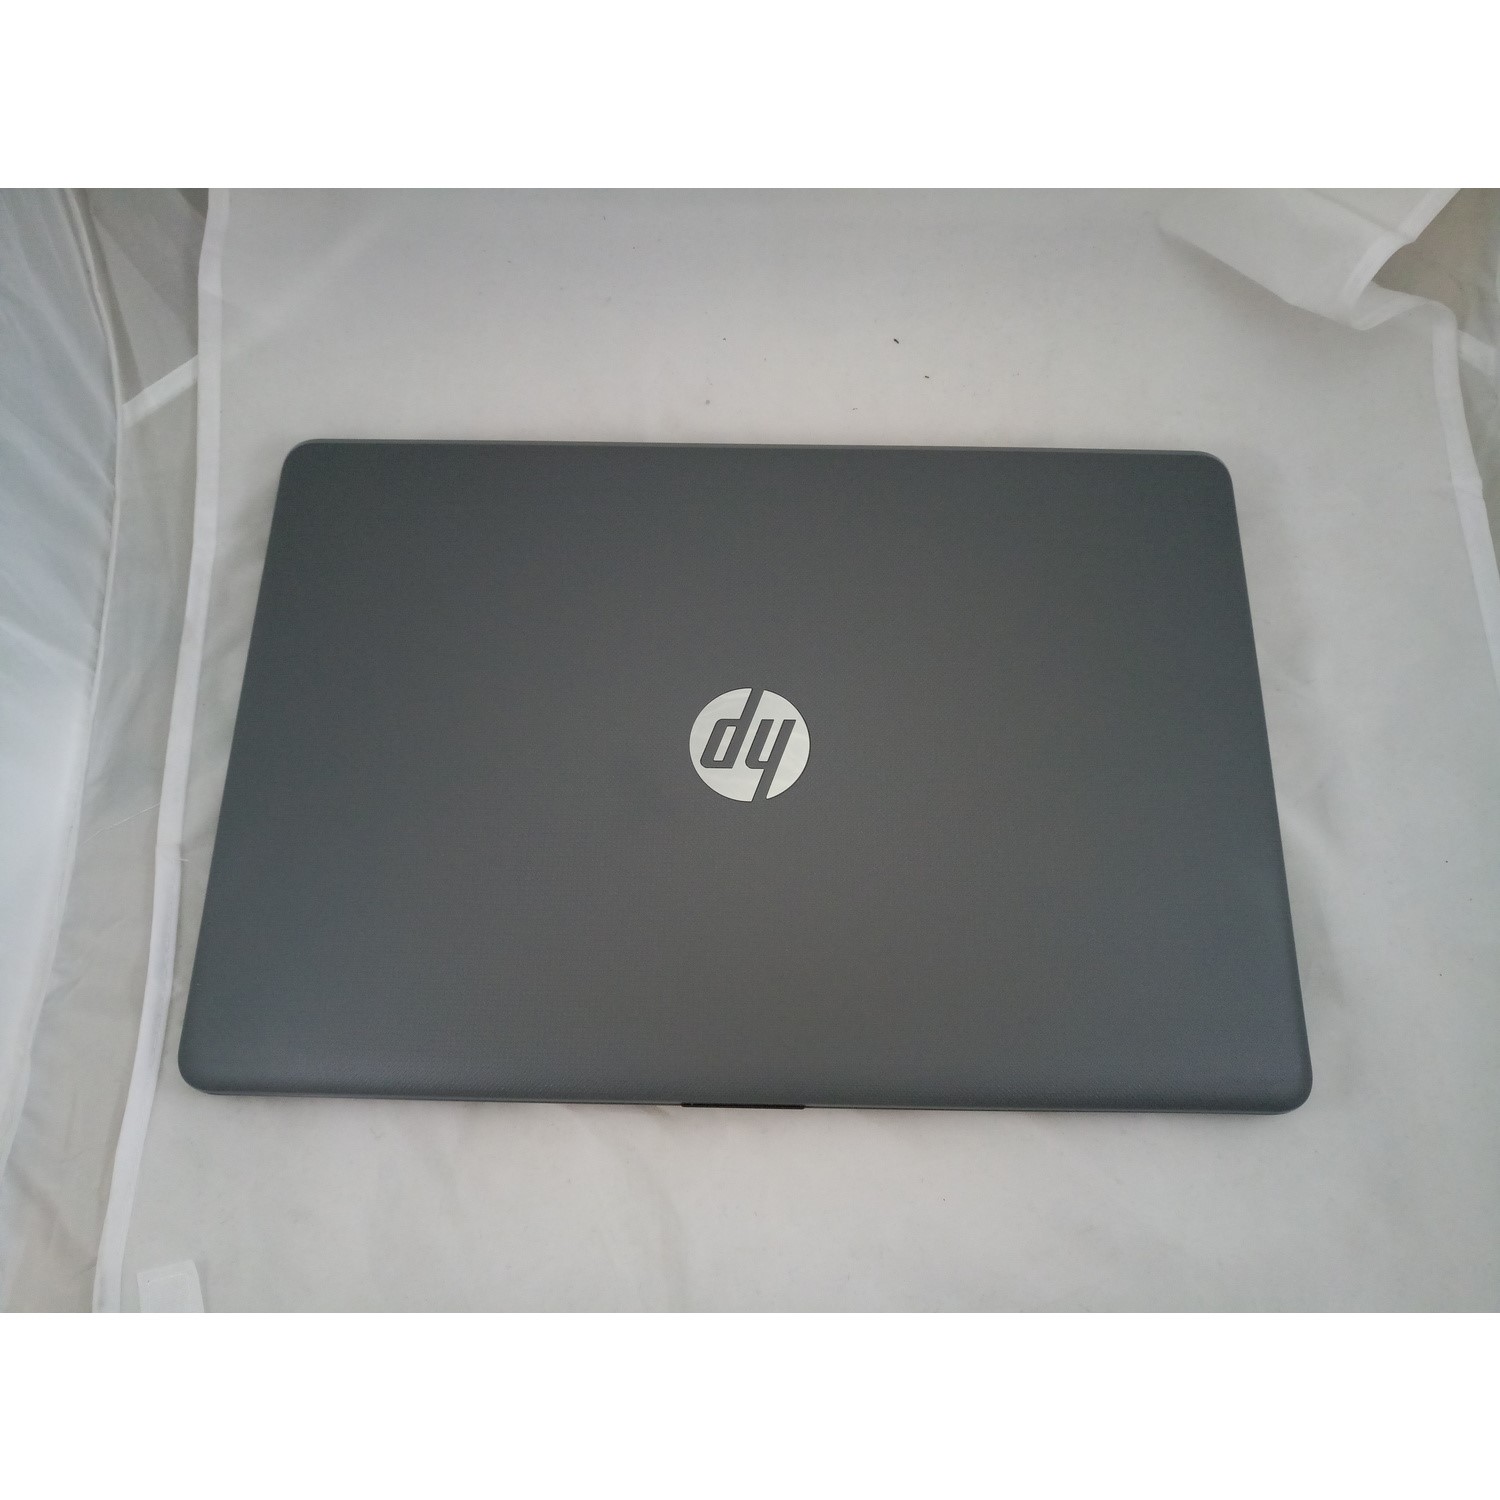 Refurbished HP 15-BW0XX AMD A6 9220 4GB 1TB 15.6 Inch Windows 10 Laptop